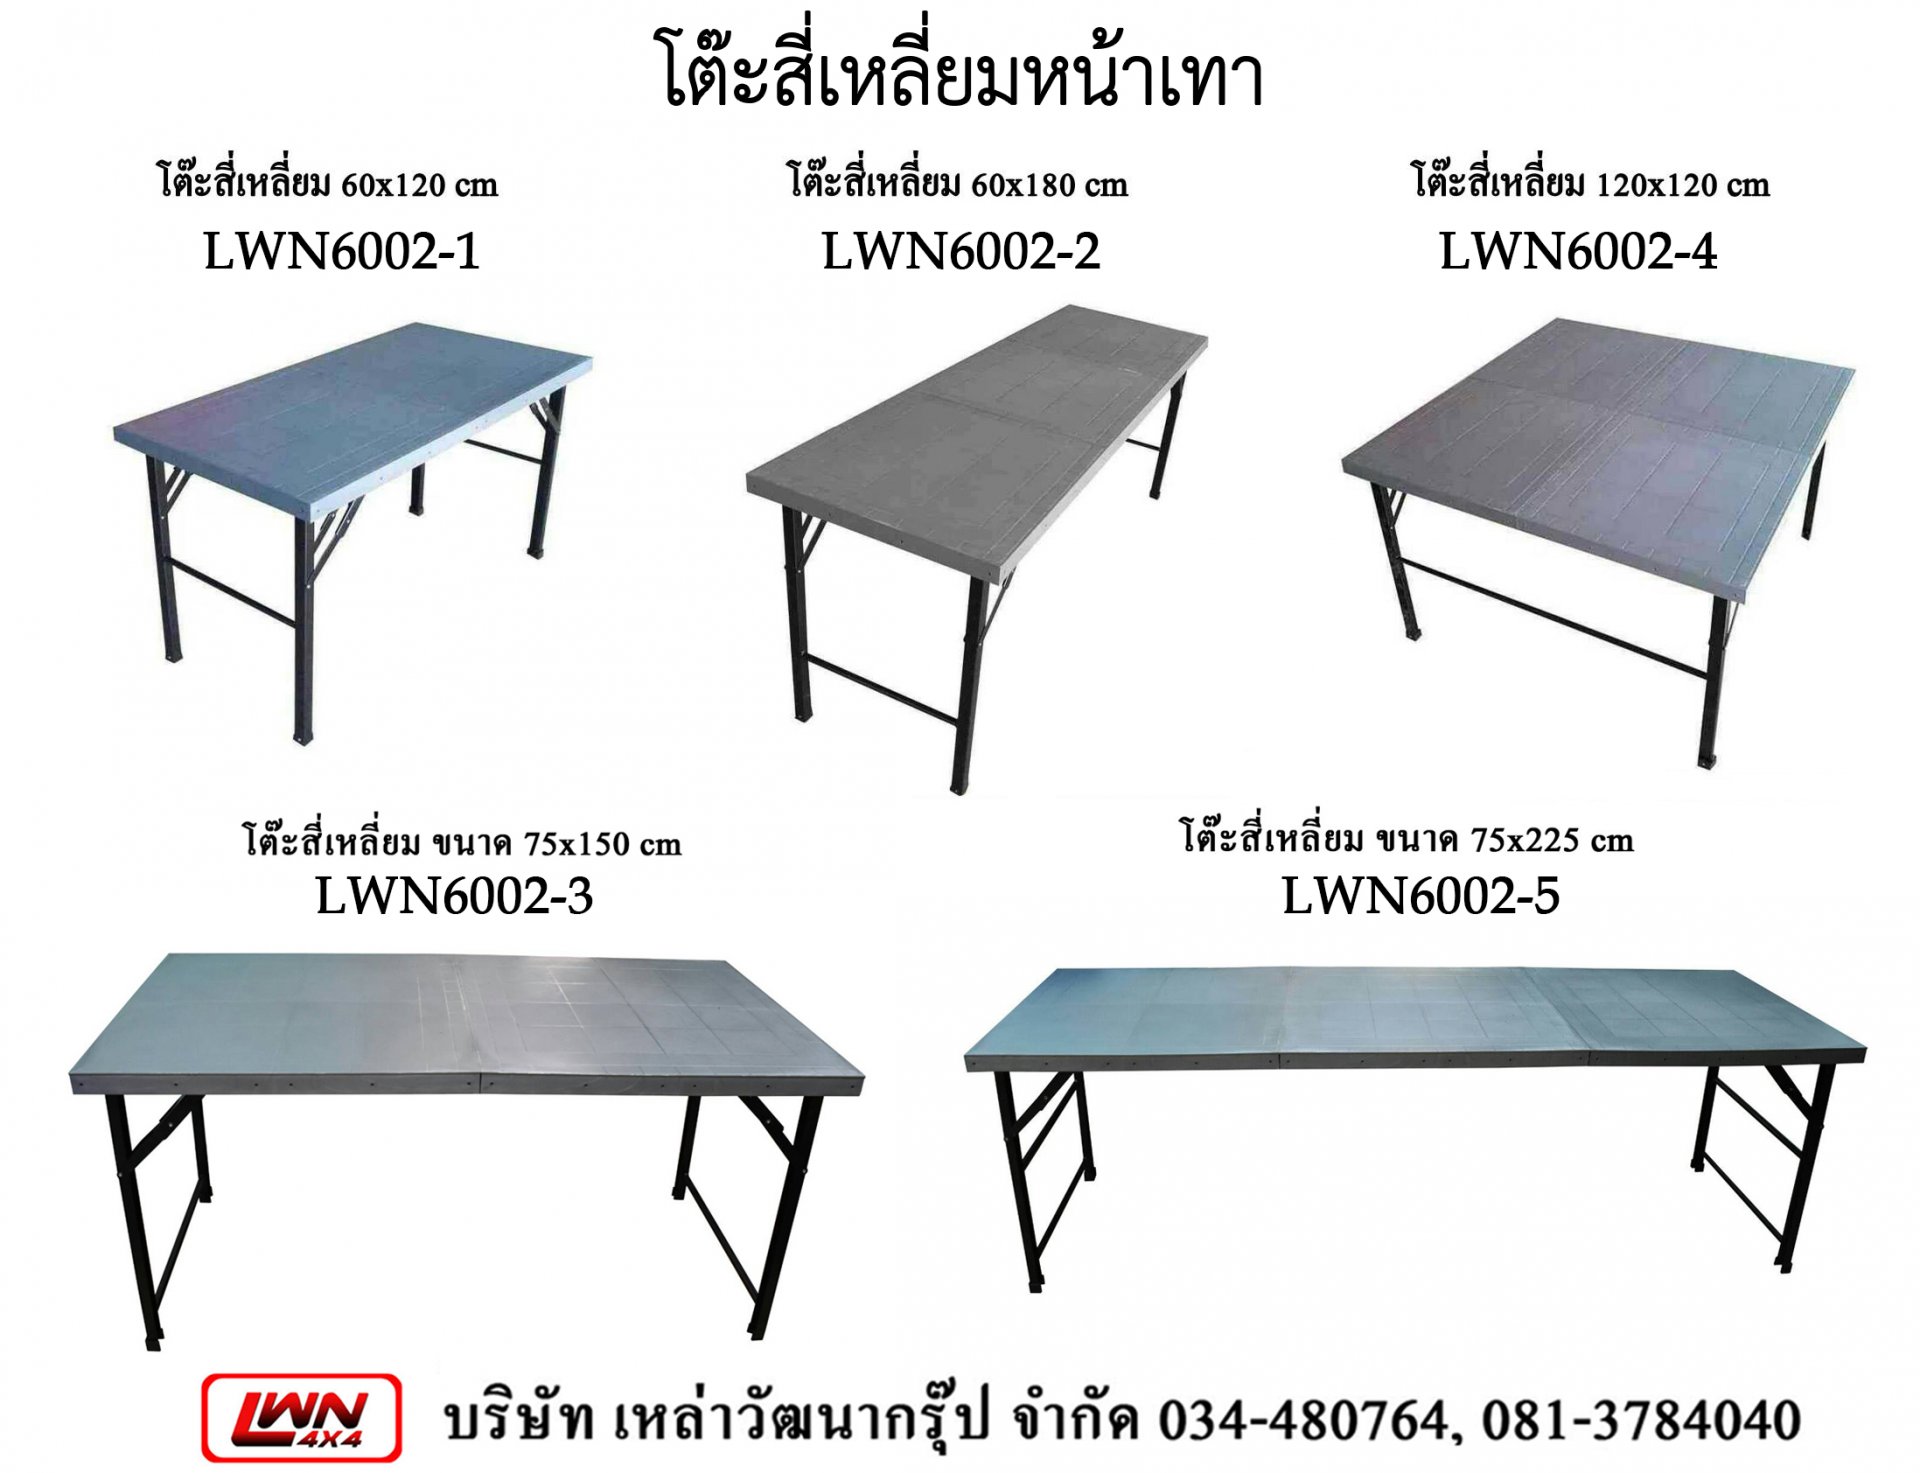 โต๊ะสี่เหลี่ยม พลาสติก #LWN60021